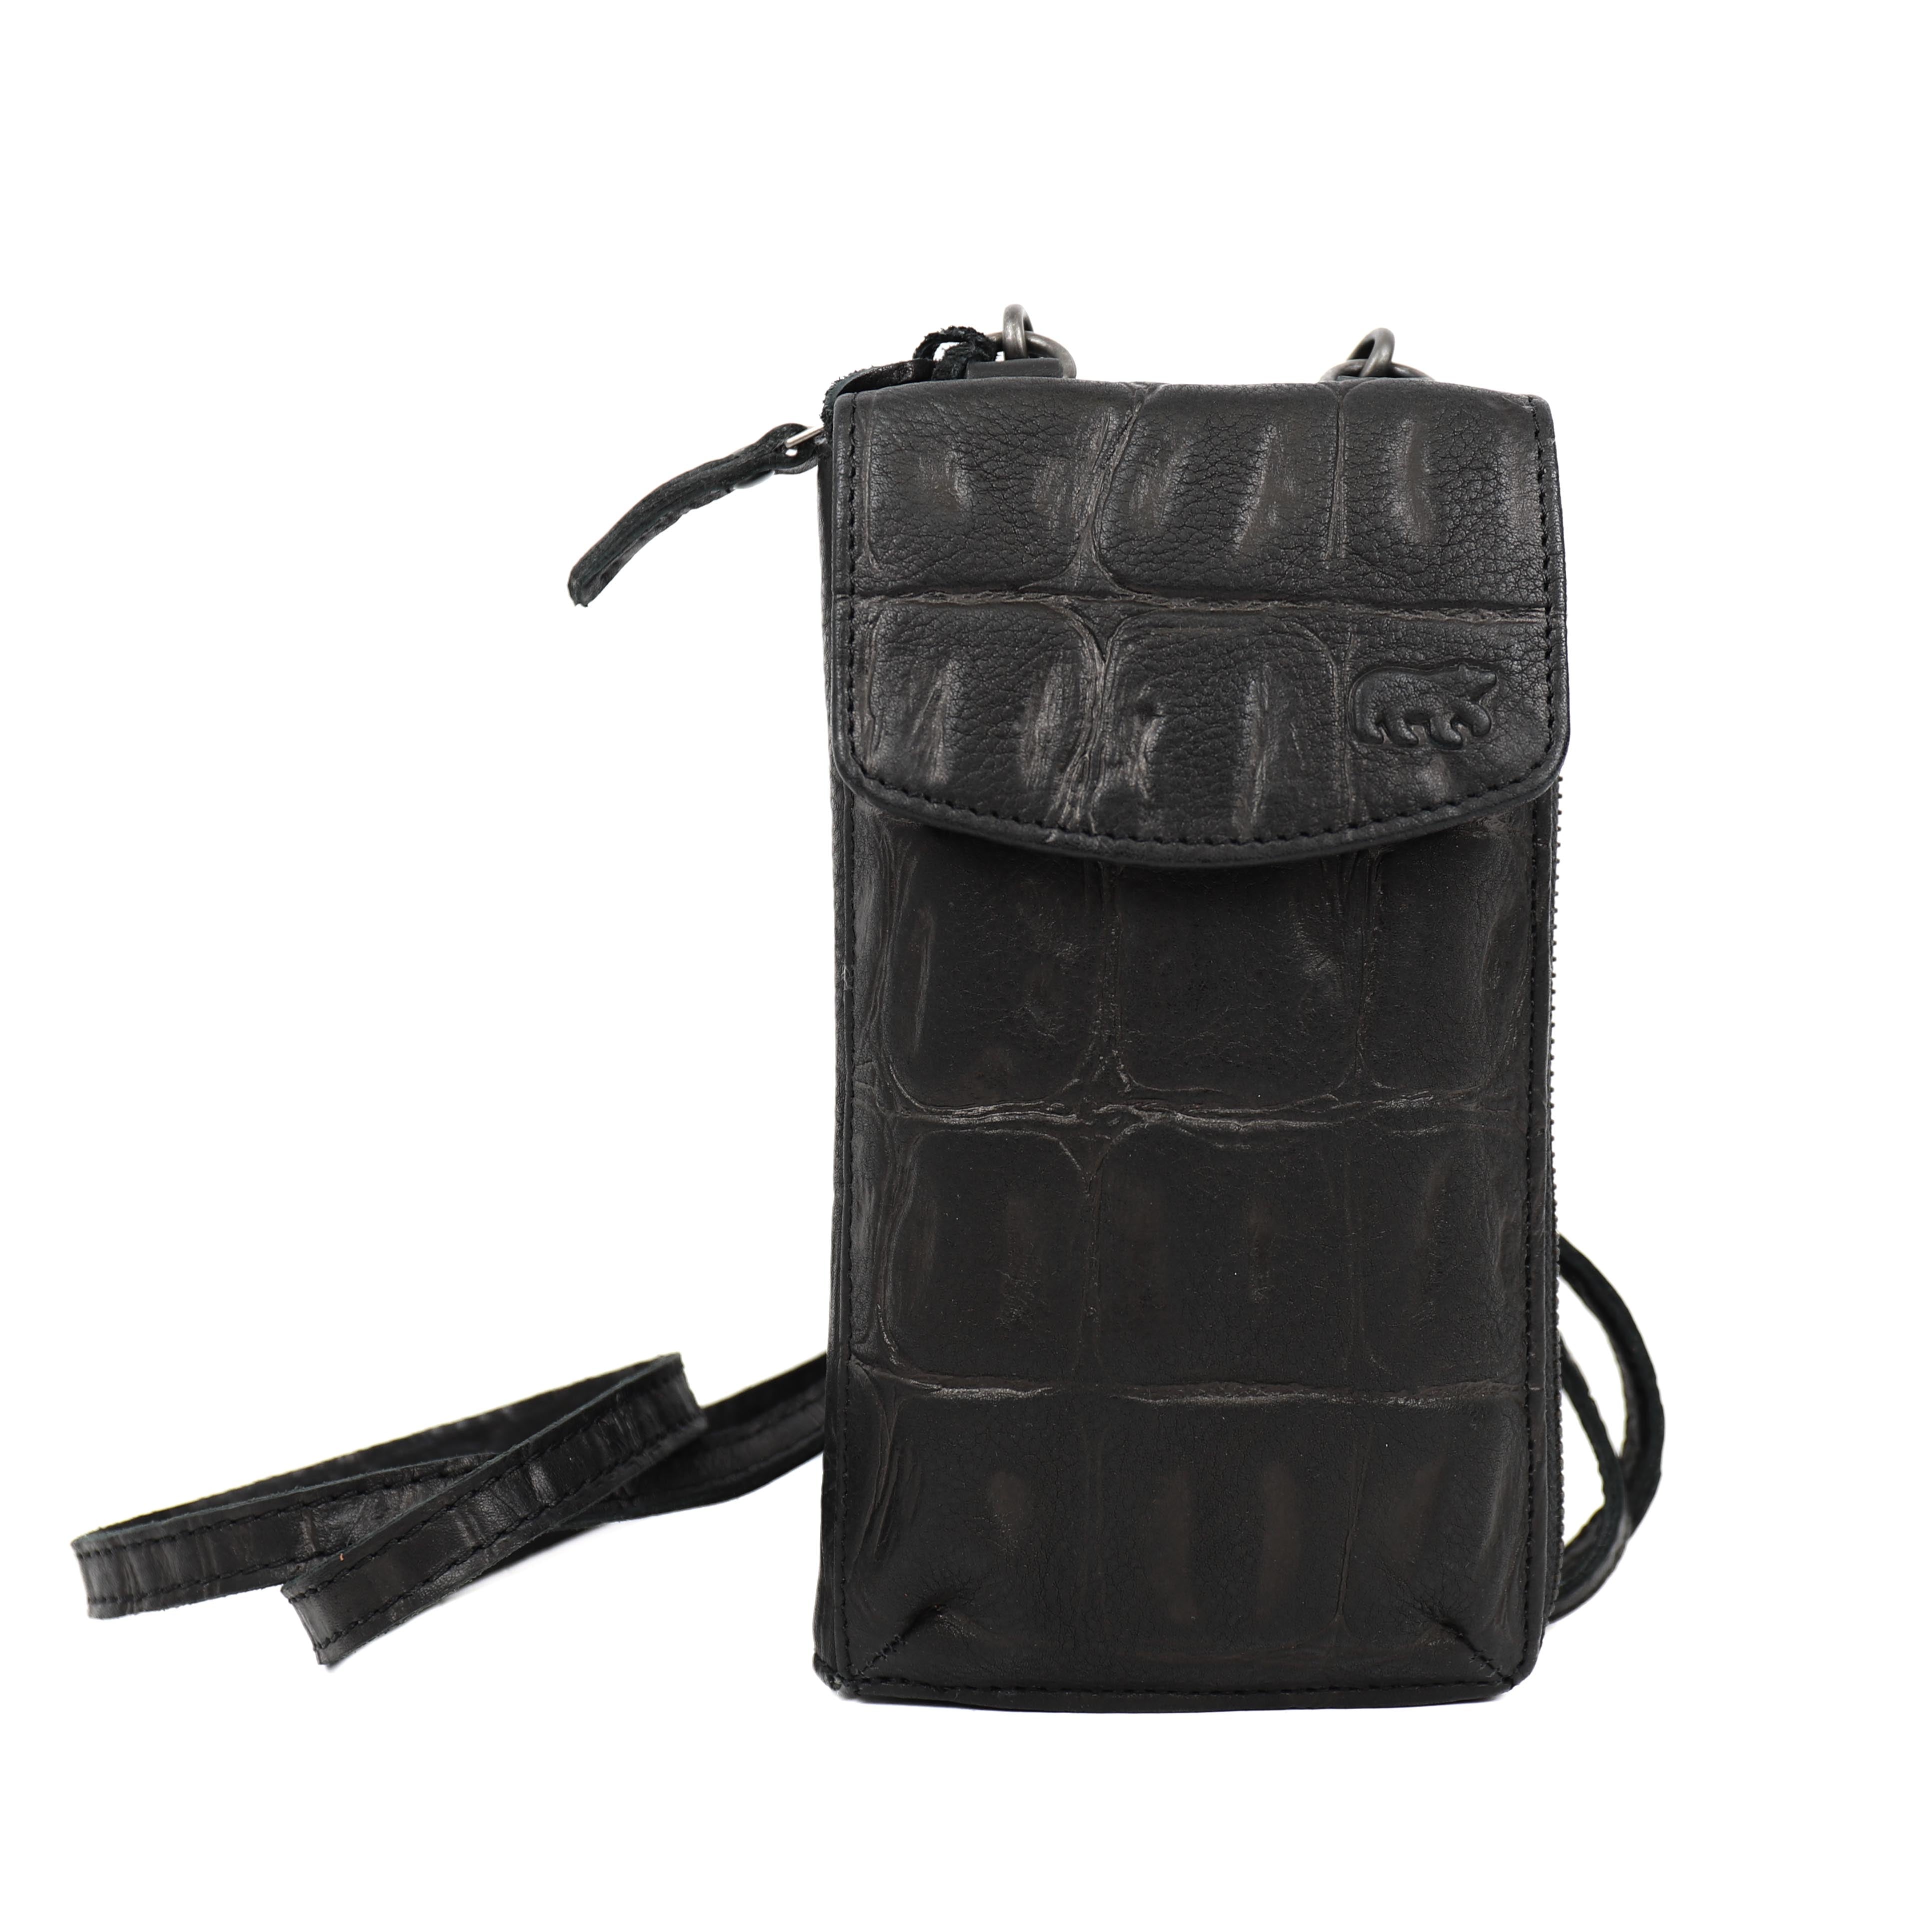 Phone bag 'Zoey' black/croco